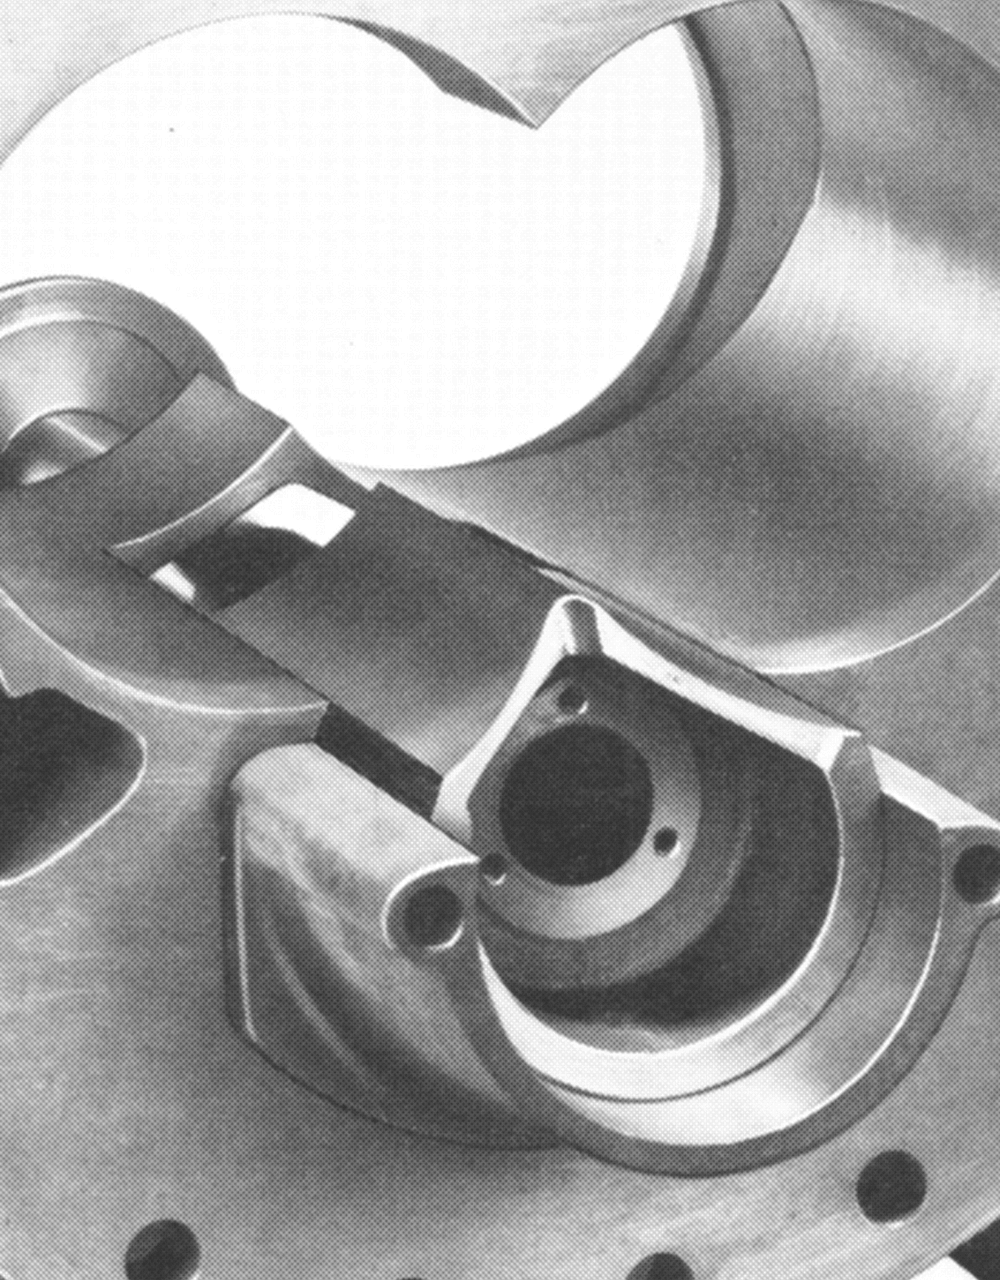 Kuva yhdestä ensimmäisistä kylmäkoneisiin tarkoitetuista ja öljyruiskutuksella varustetuista ruuvikompressoreista